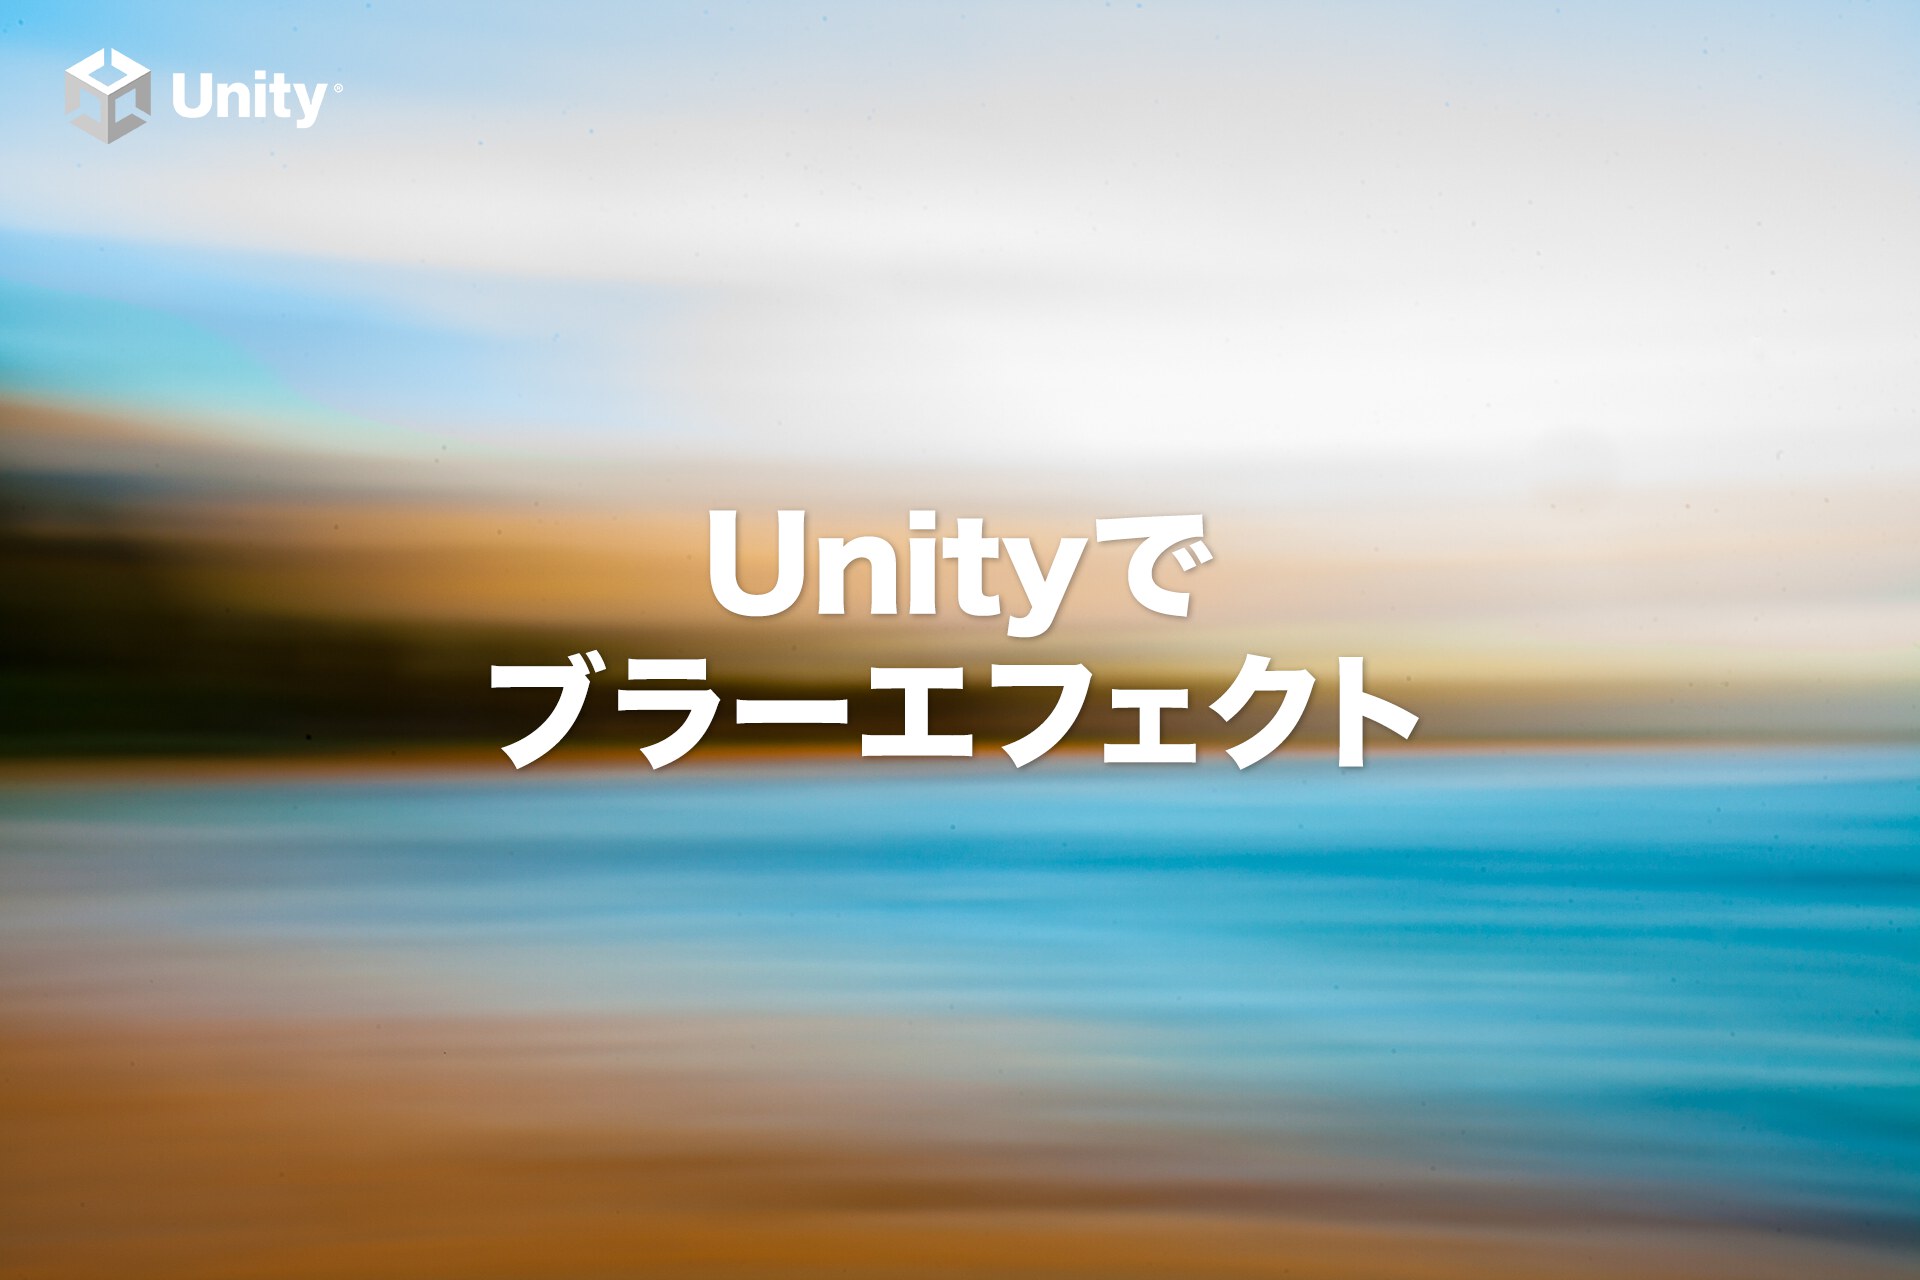 【Unityでポストエフェクト】モーションブラーを最初から作る方法